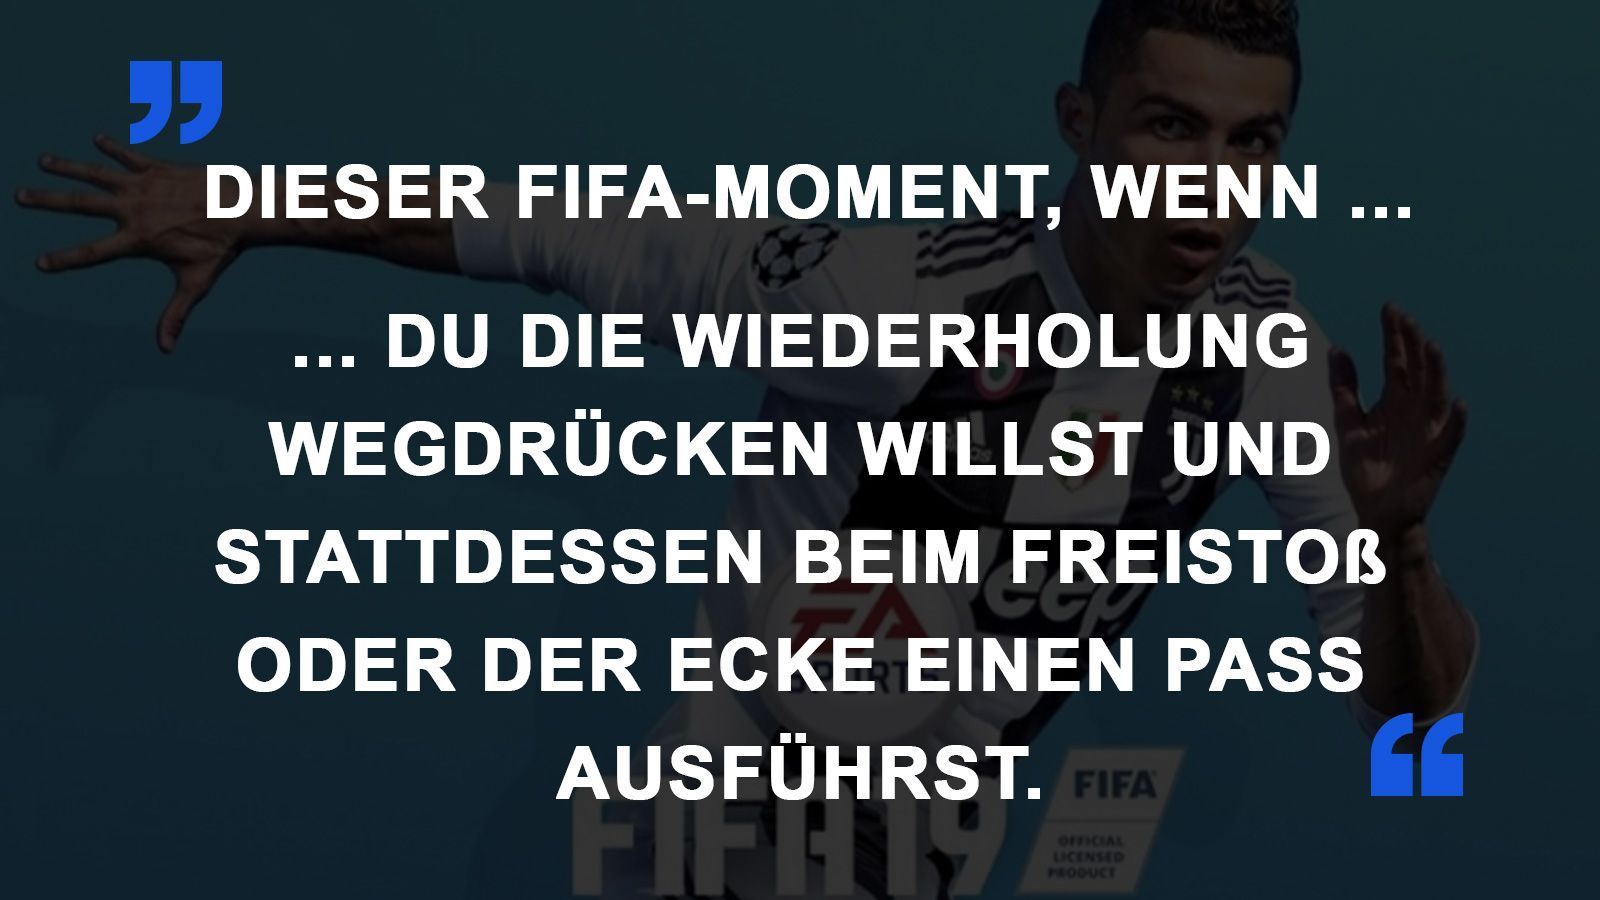 
                <strong>FIFA Momente Wiederholung</strong><br>
                
              